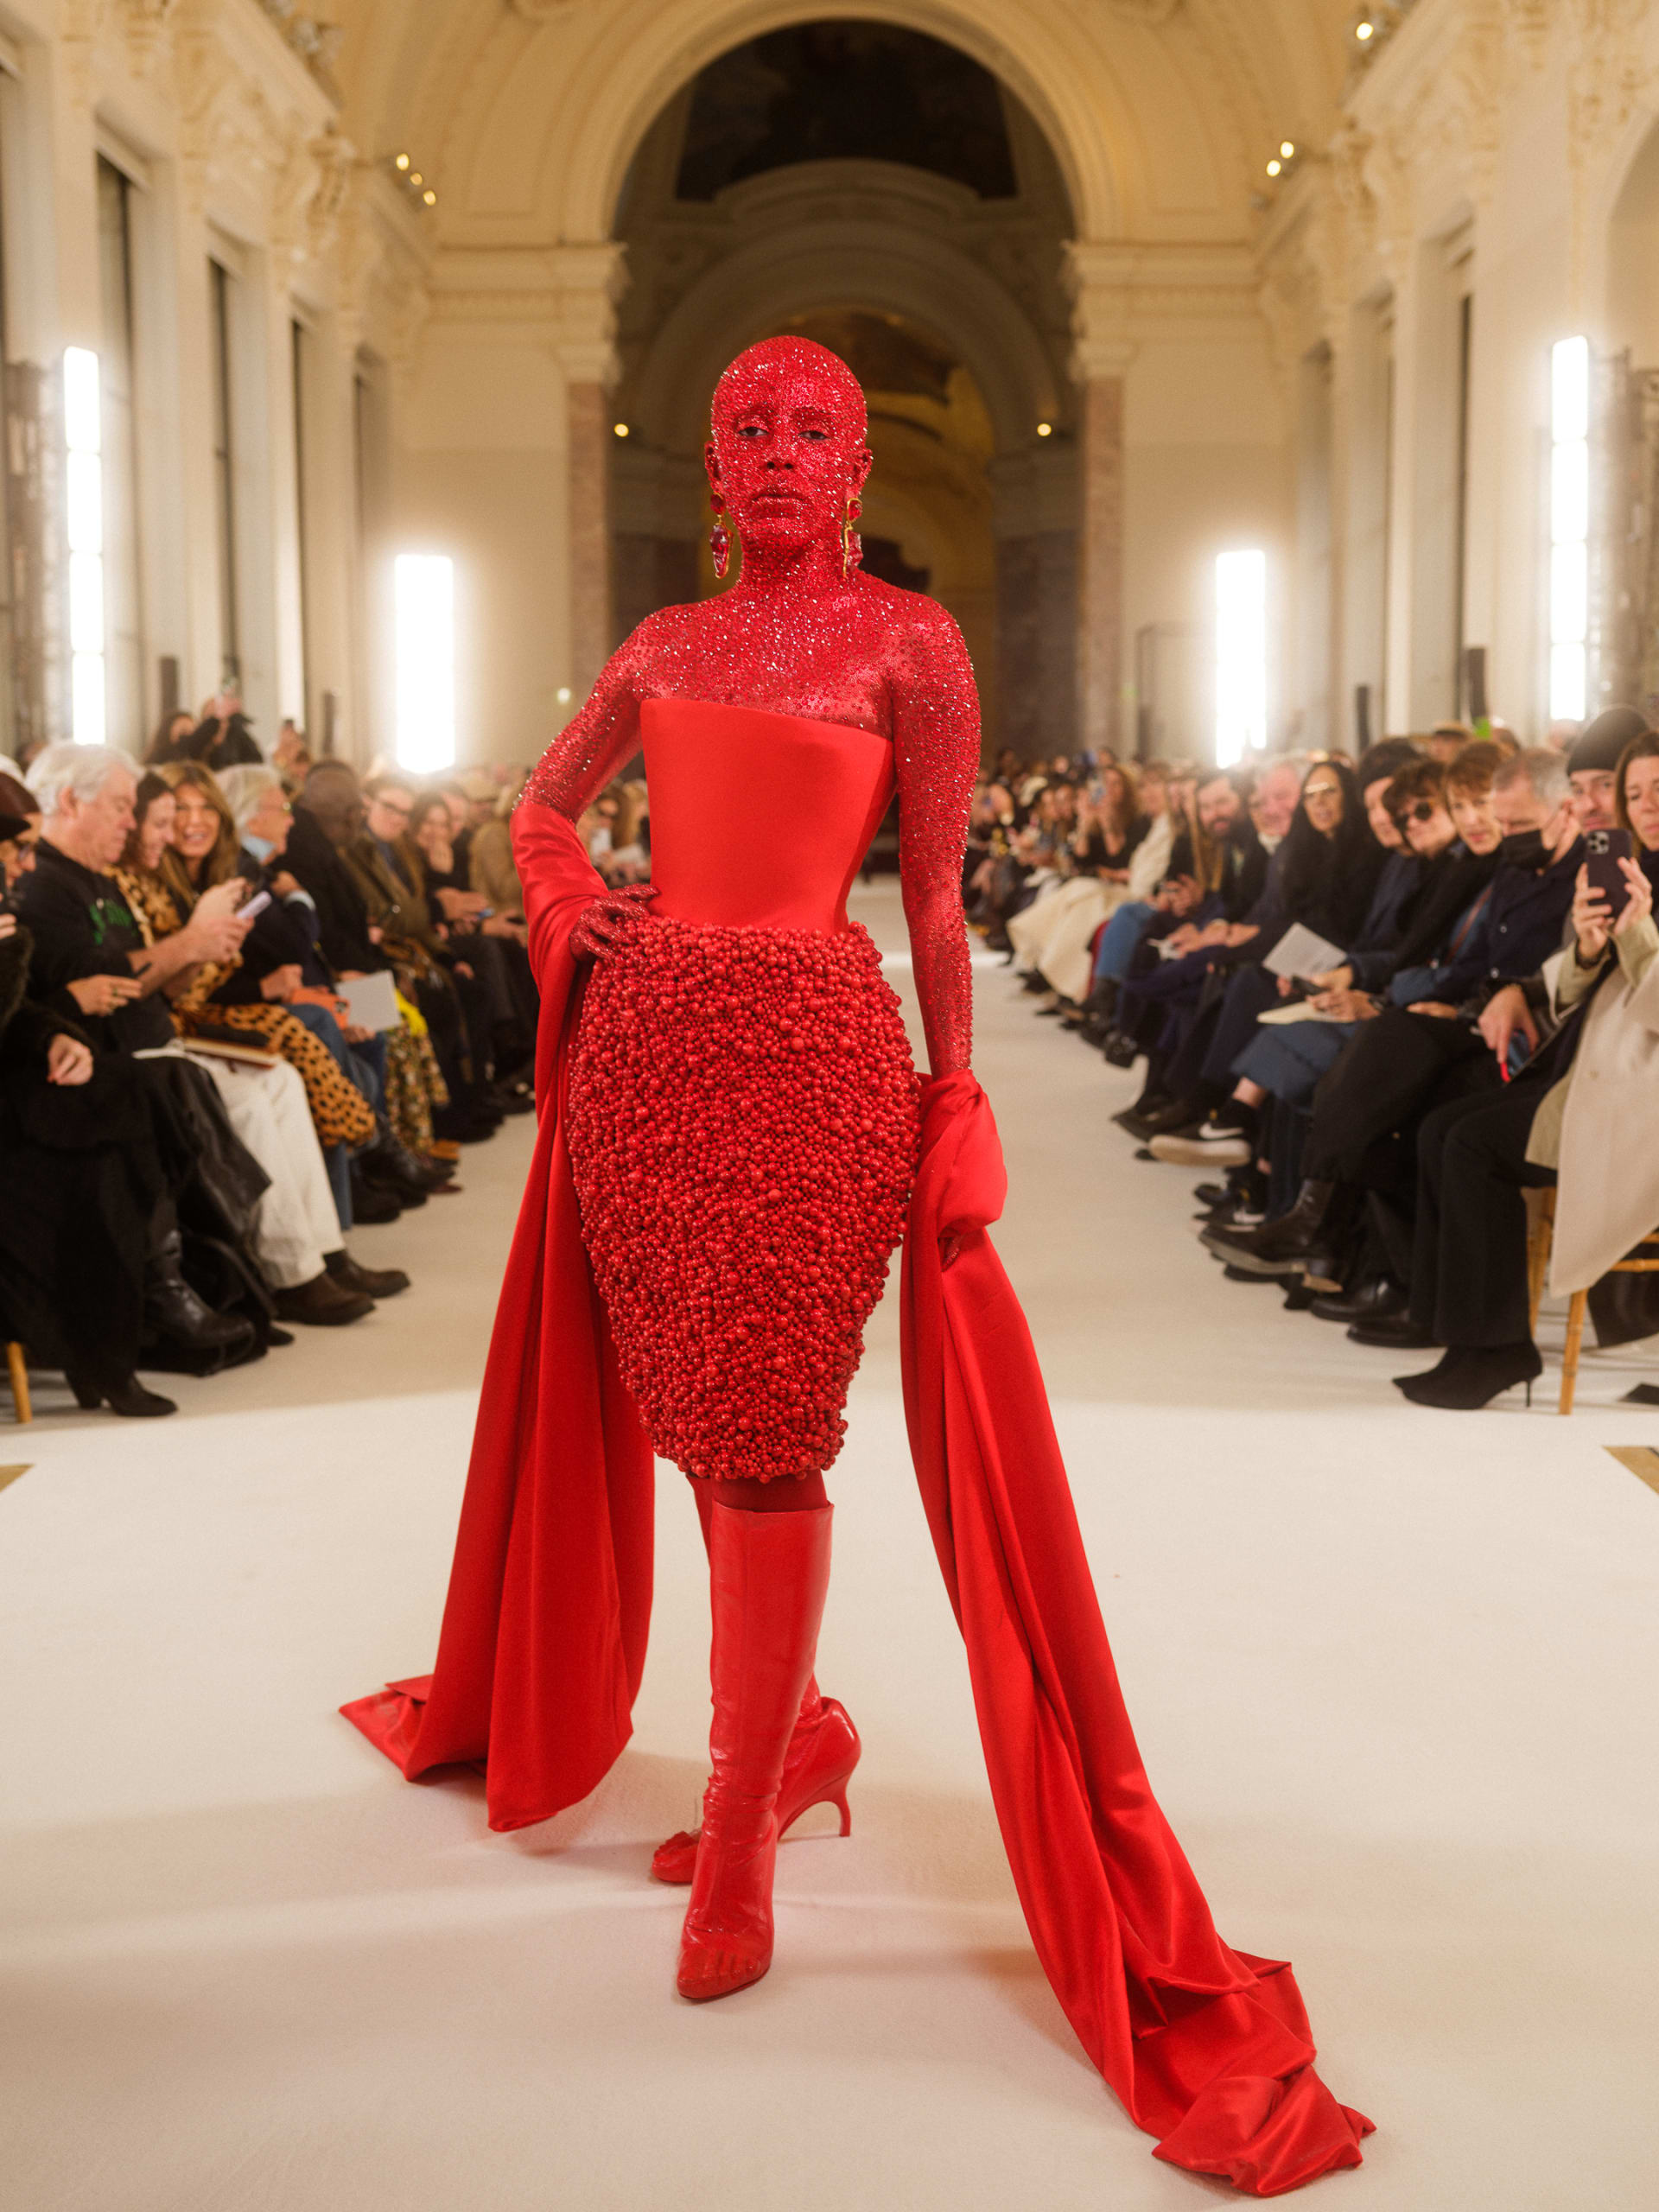 30 ألف قطعة شواروفسكي أكملت طلّة دوجا كات "الجهنمية خلال أسبوع الموضة الباريسي